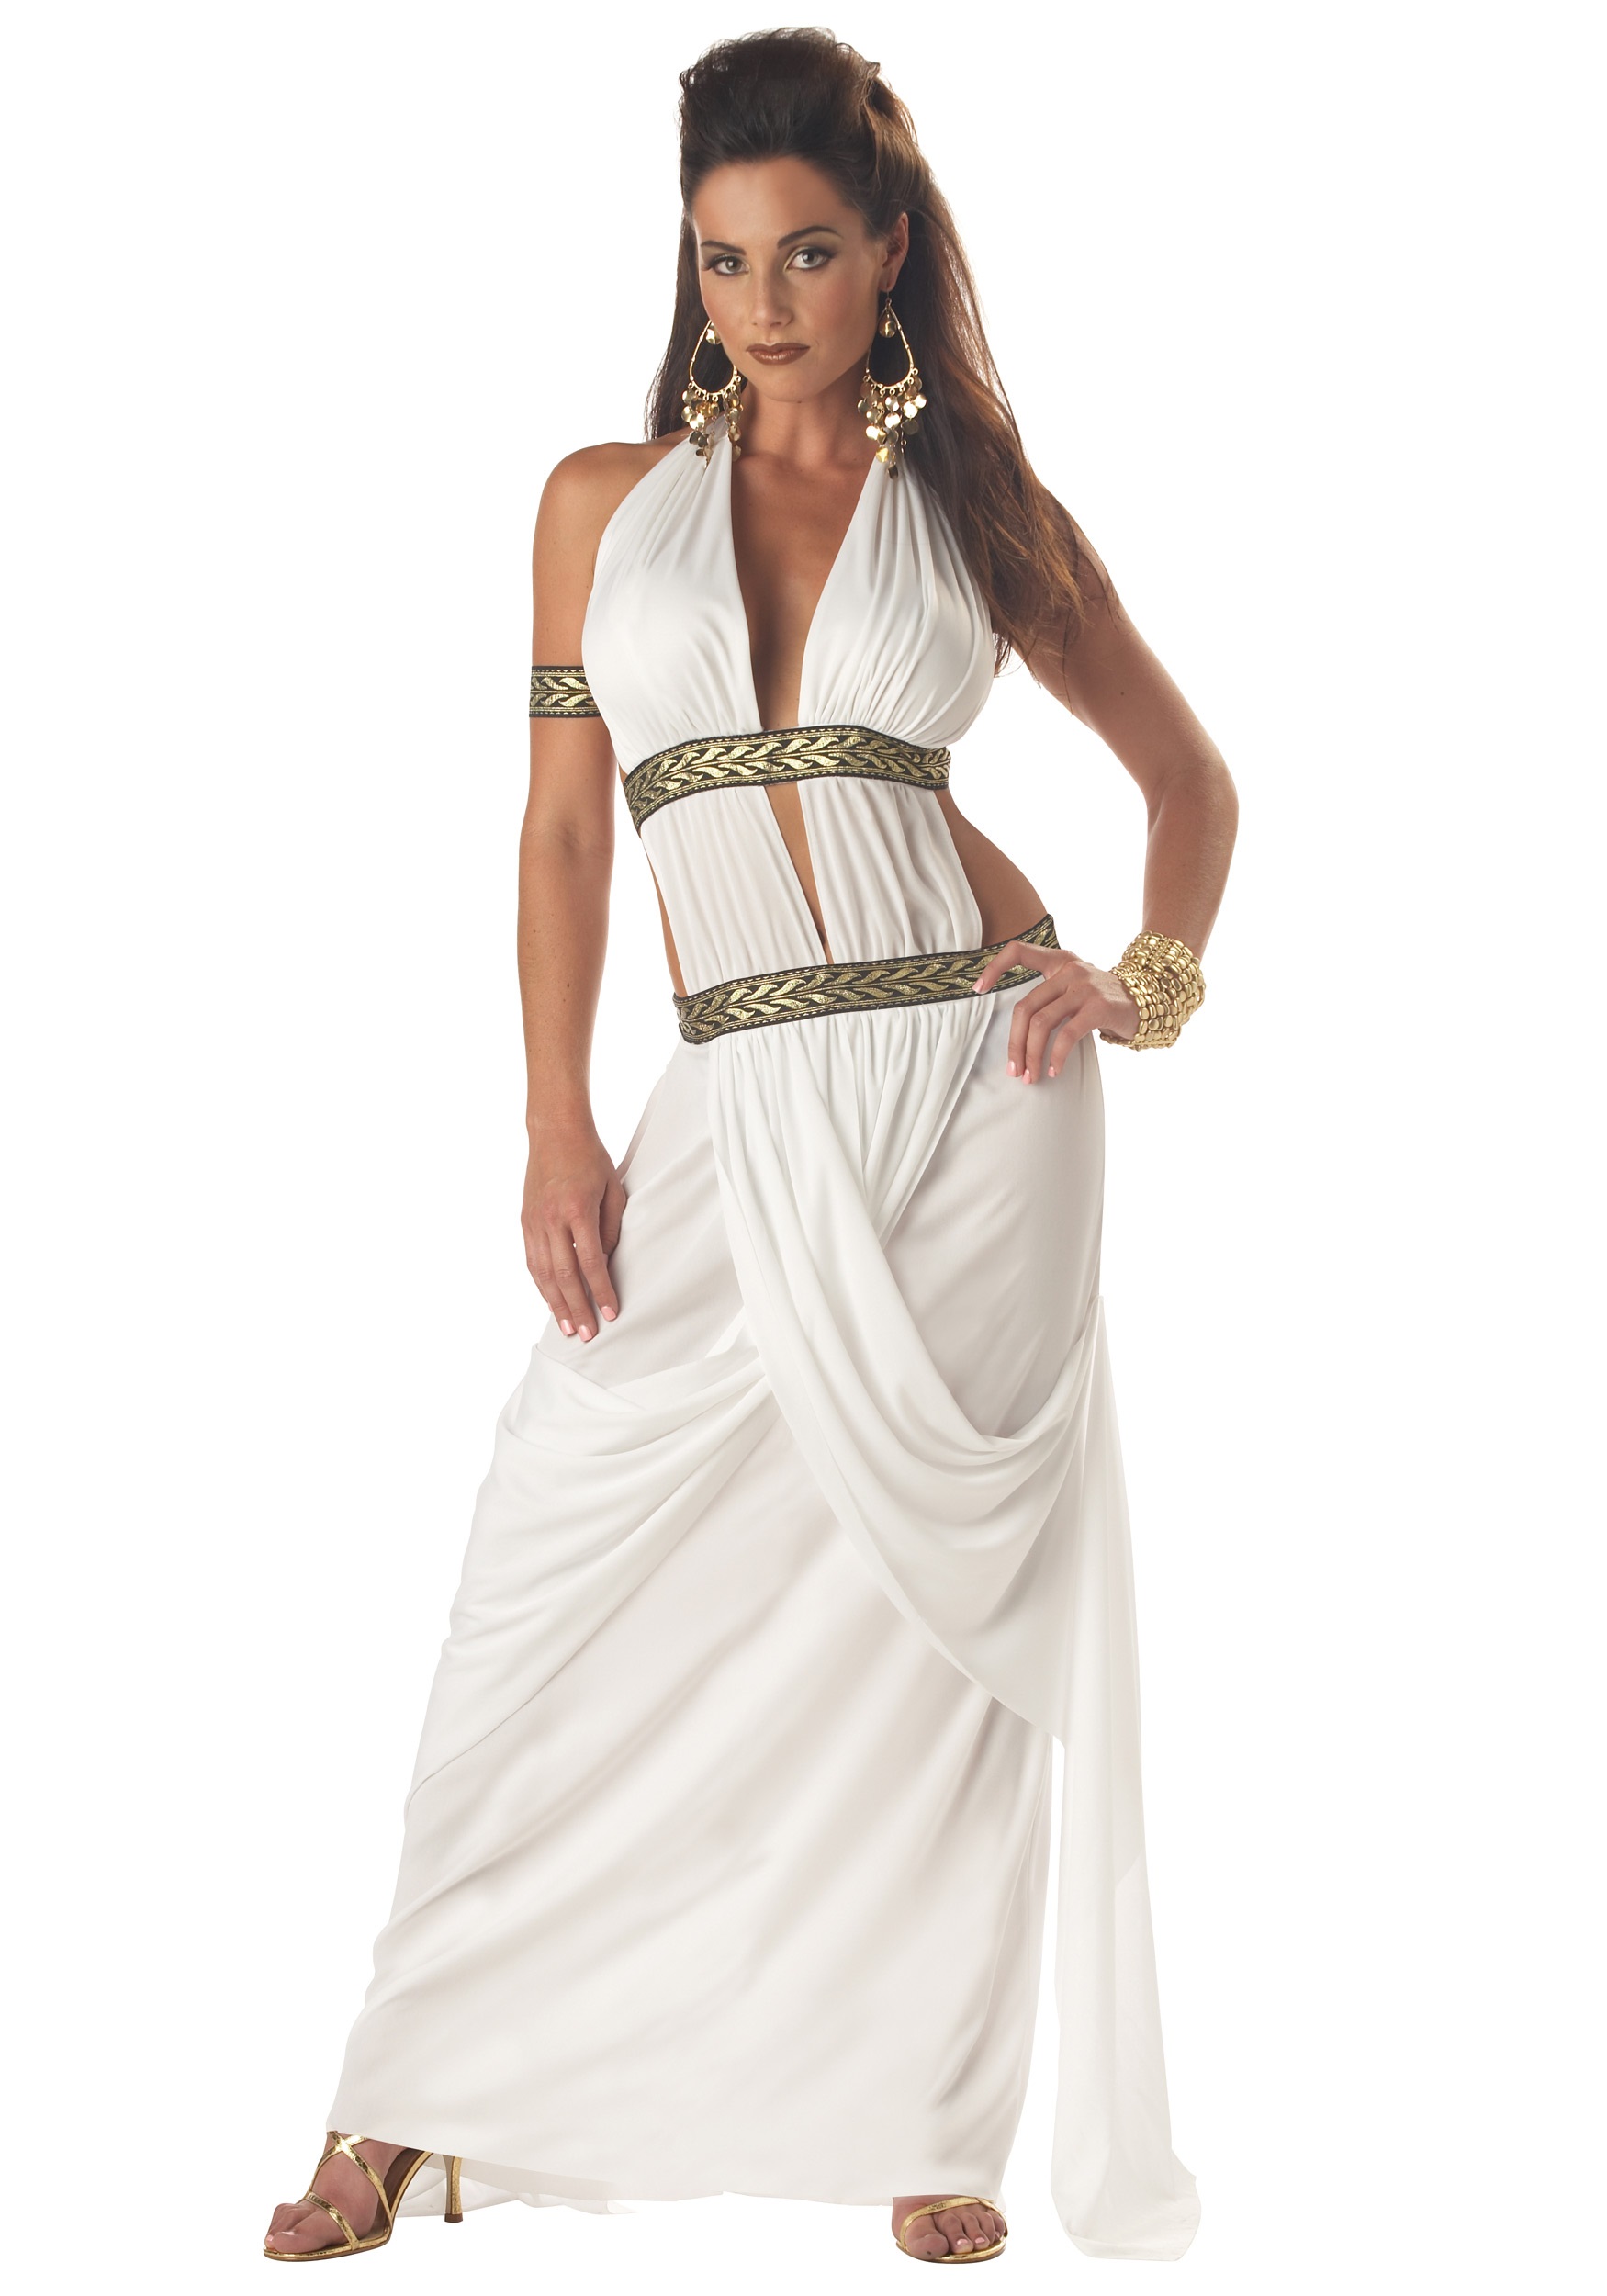 Греческий стиль в одежде женщины